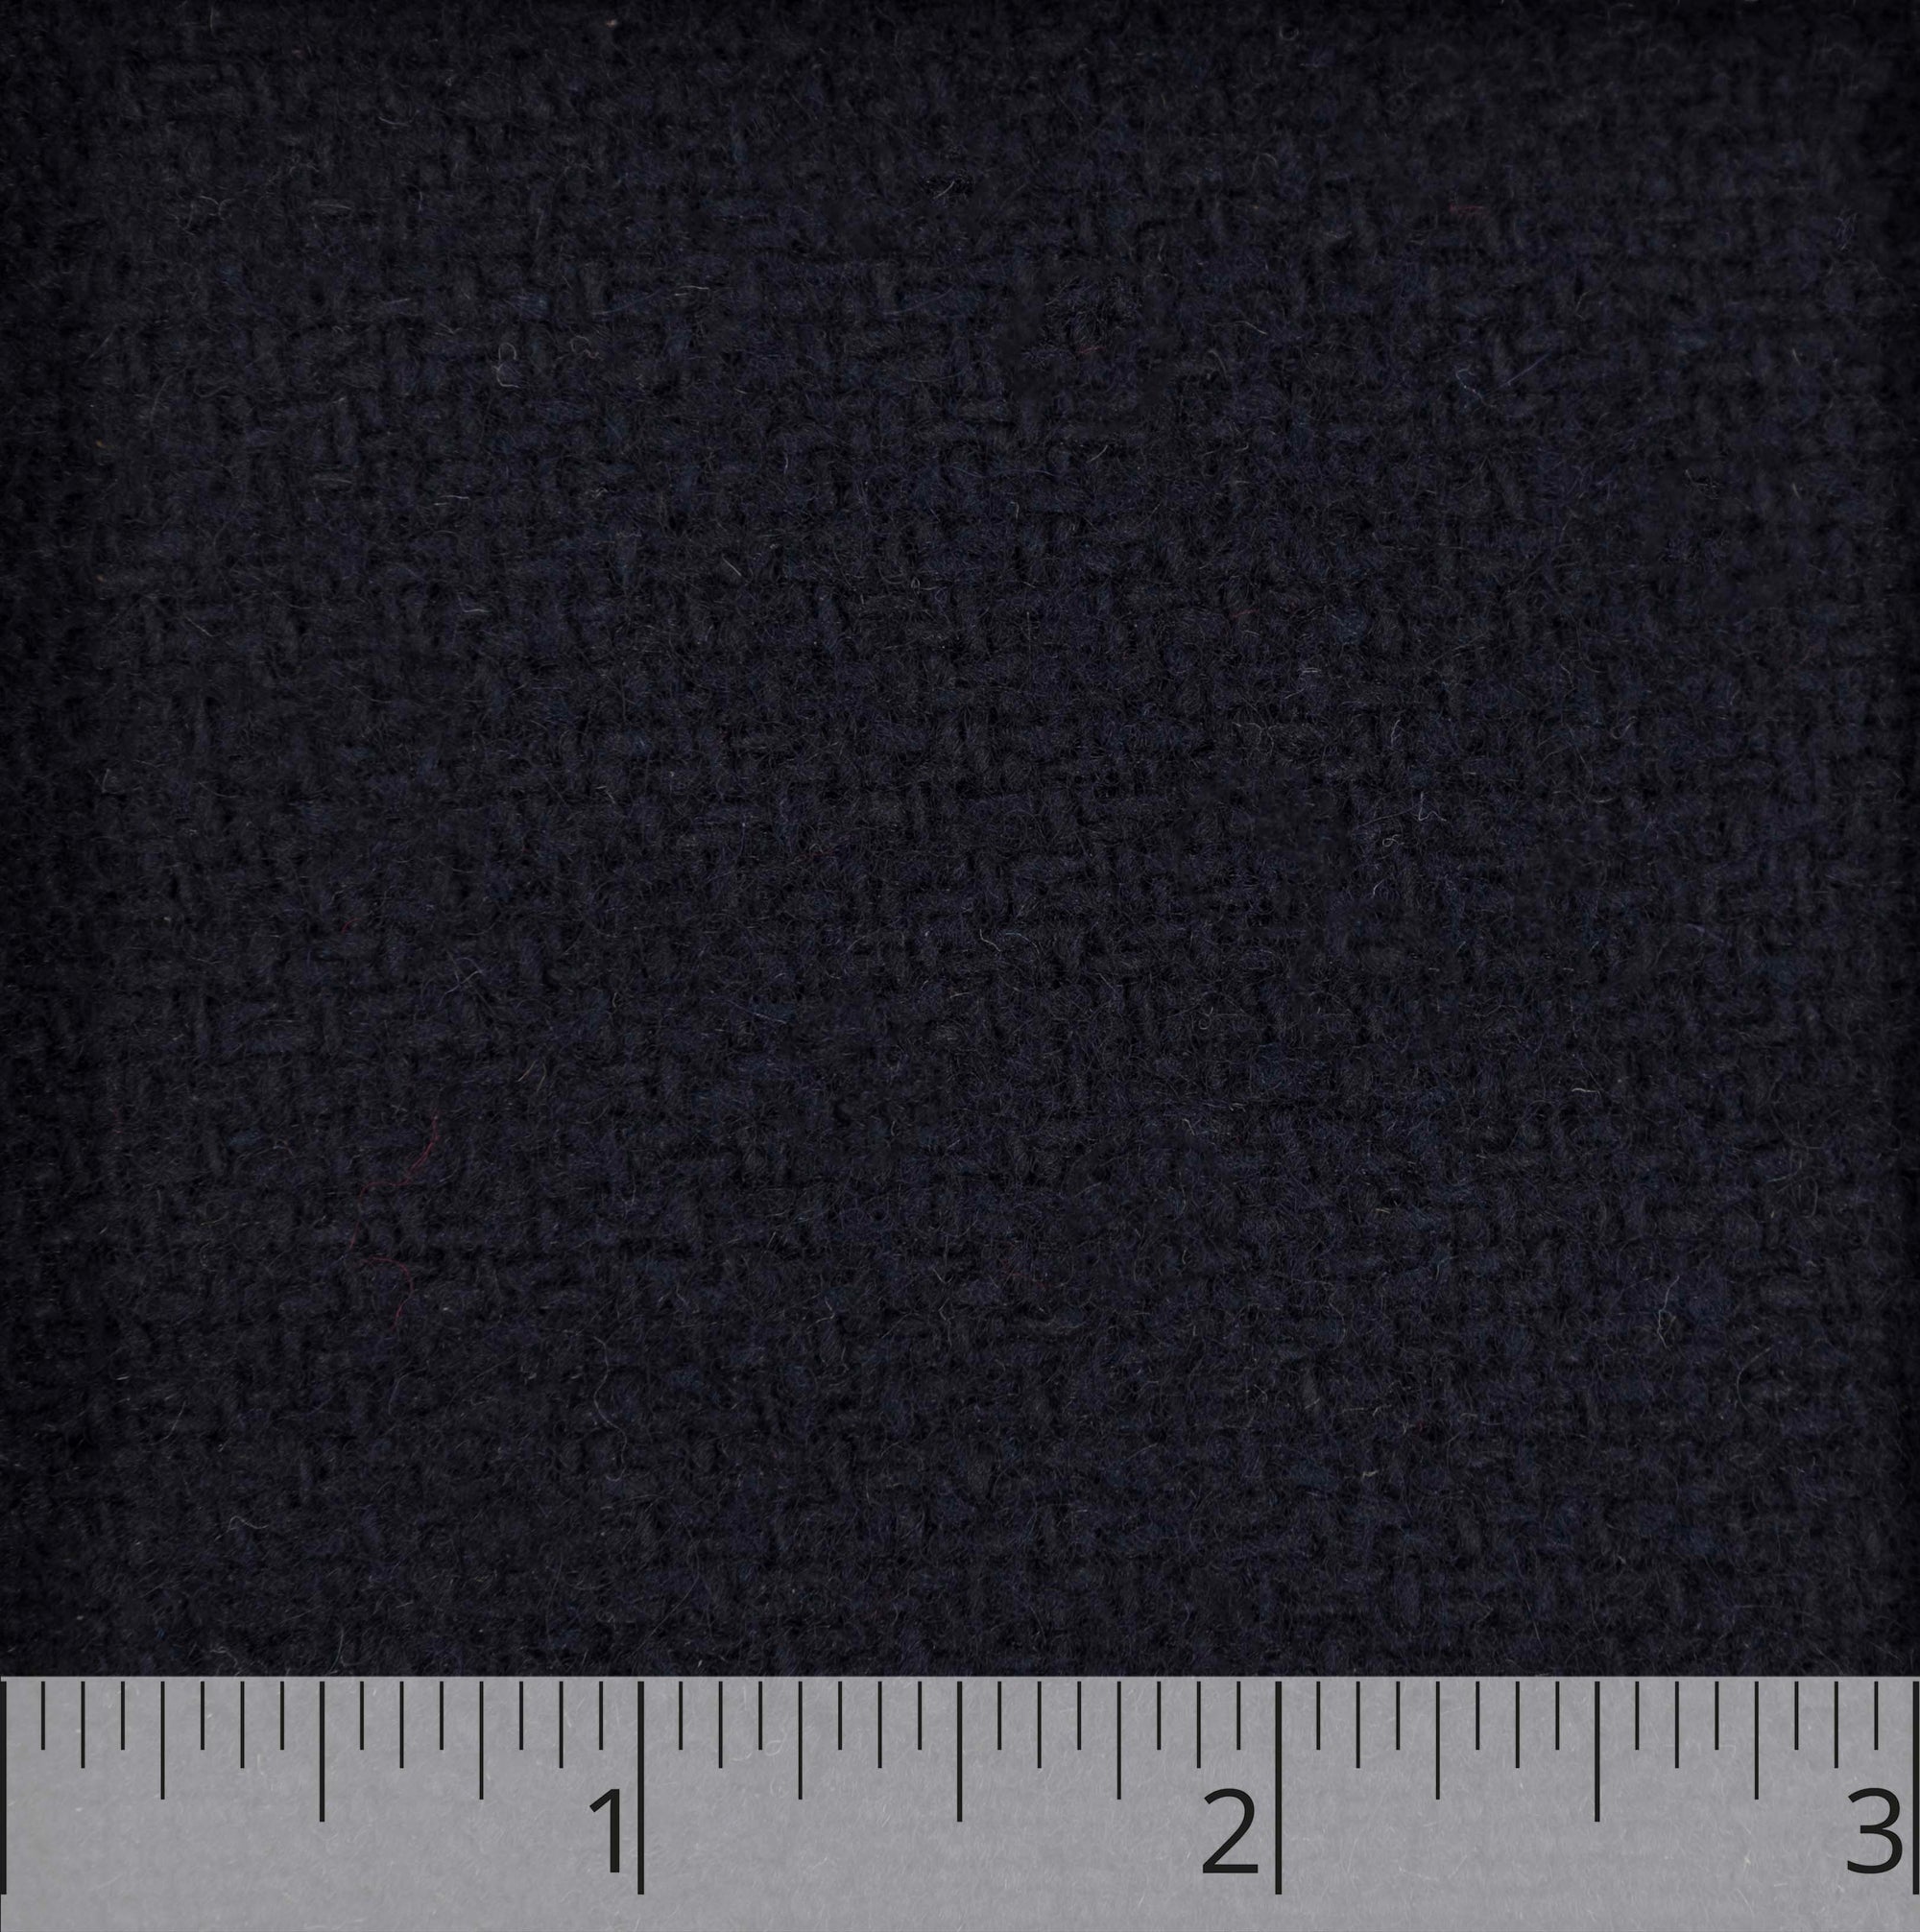 Navy Wool Coating - $25.00 yd. - Burnley & Trowbridge Co.